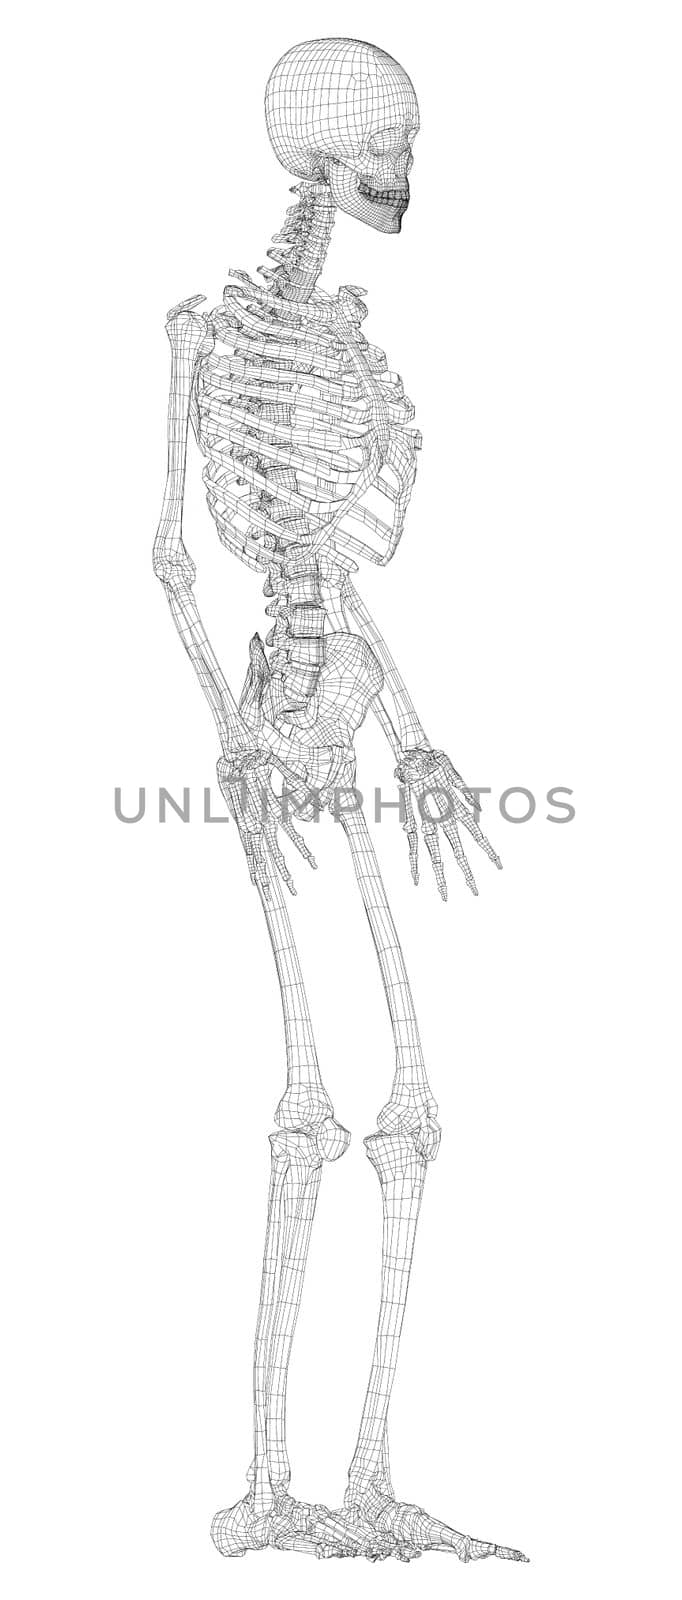 Human skeleton. 3d illustration. Wire-frame style. Illustration for medicine